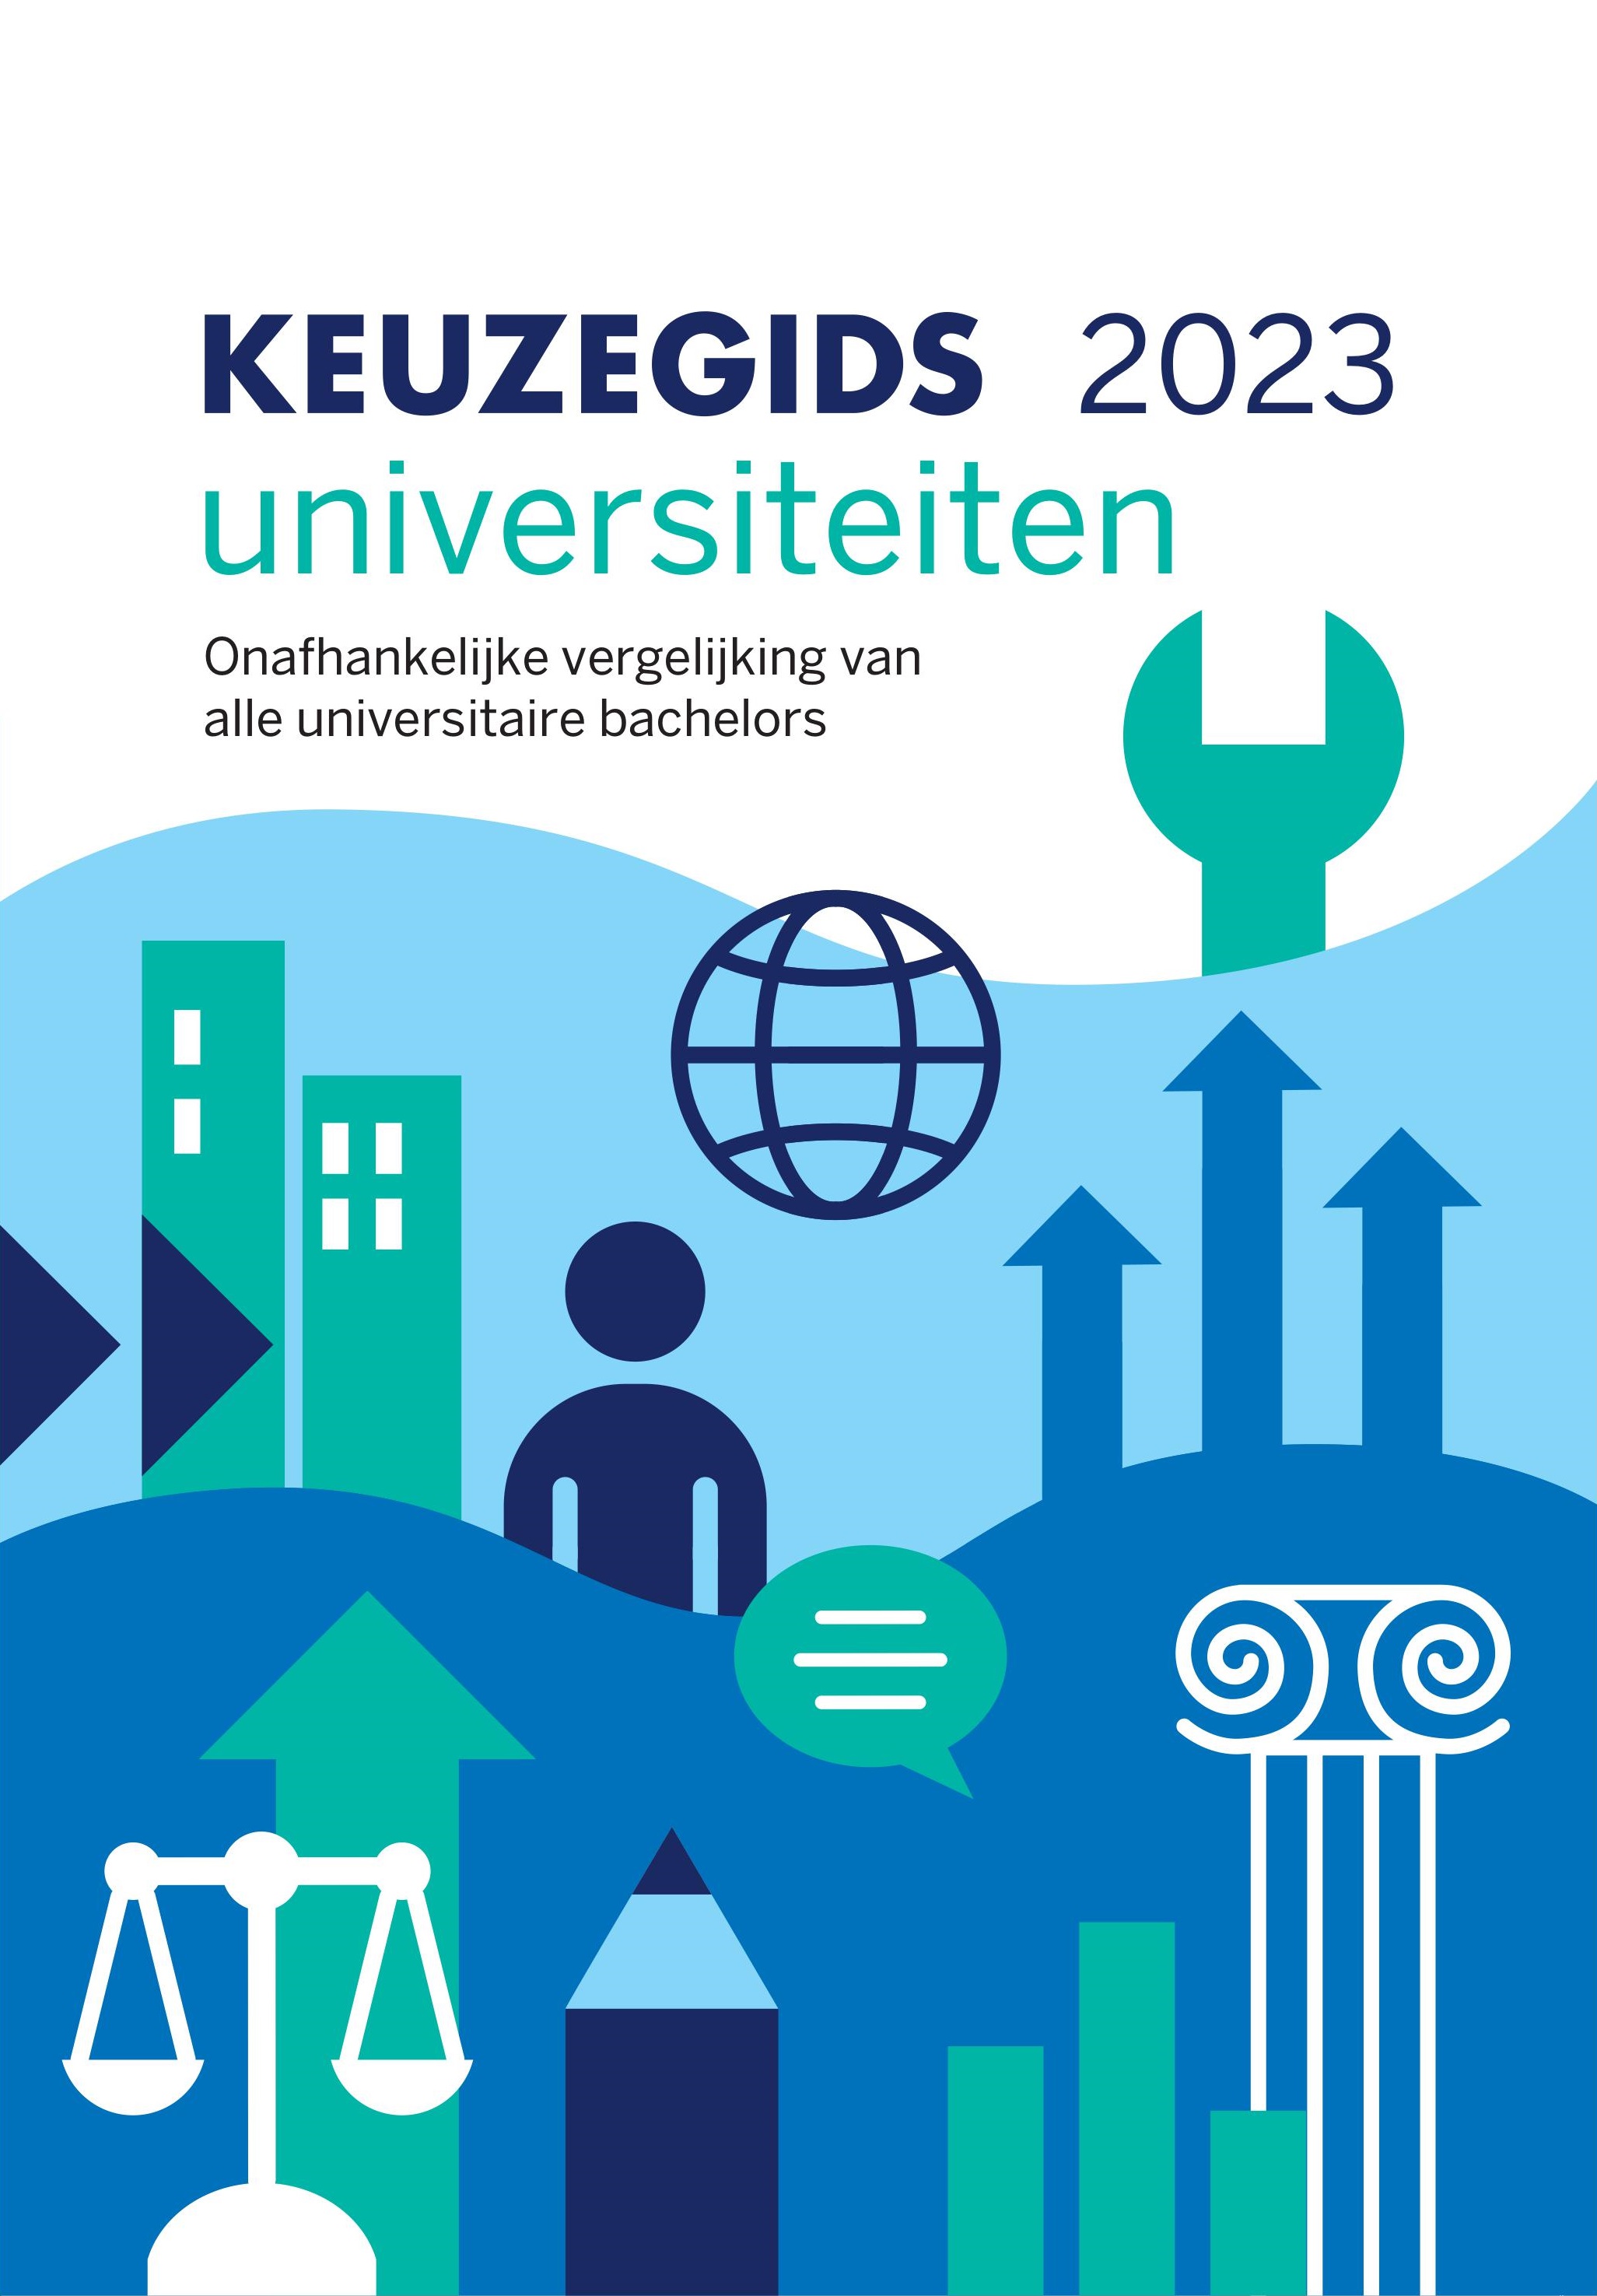 Keuzegids universiteiten 2023